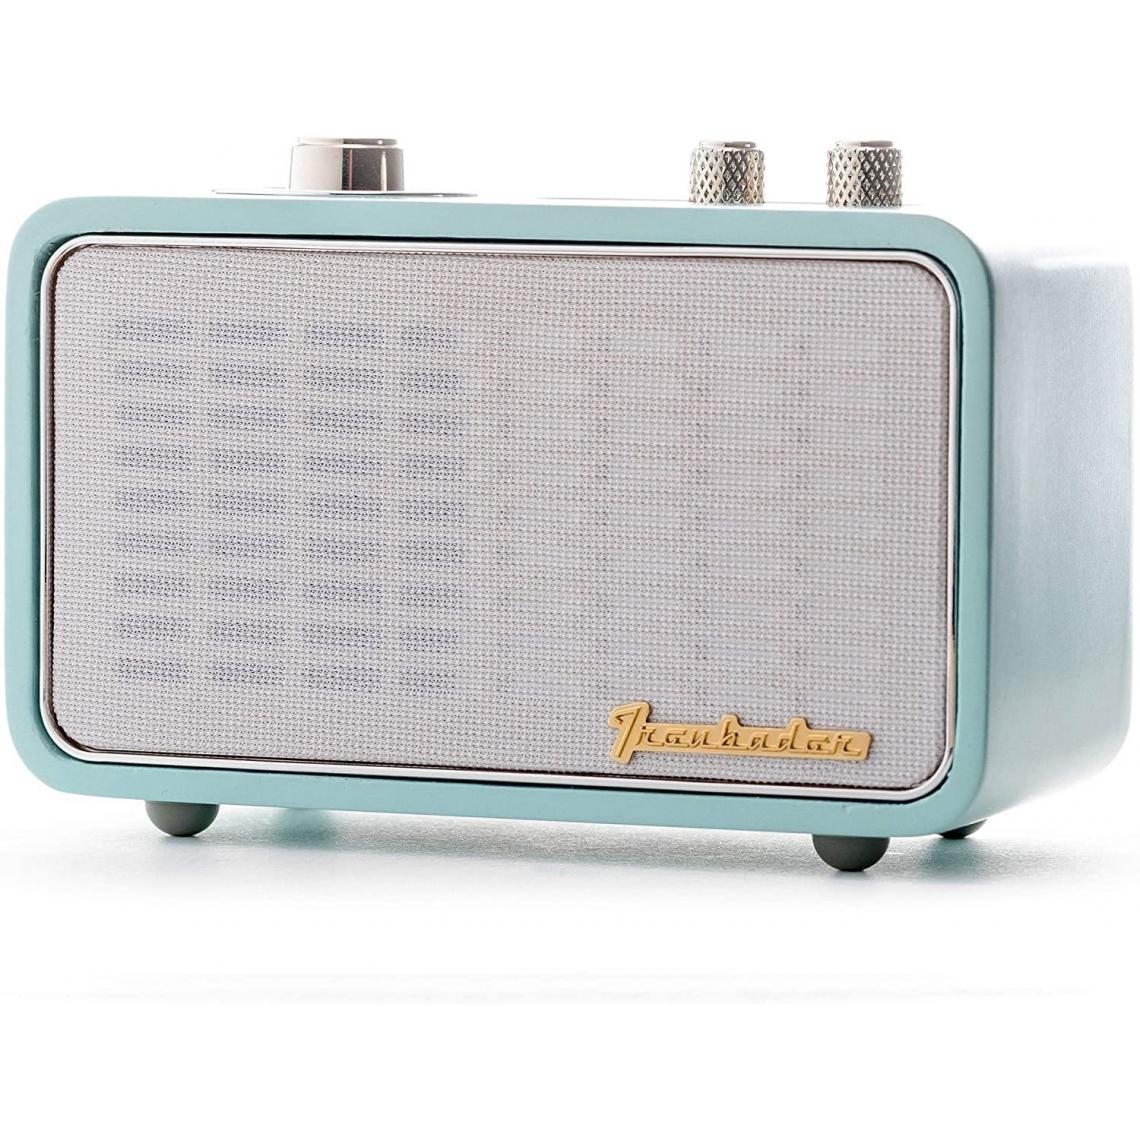 Chrono - Haut-parleur Bluetooth rétro, petit haut-parleur avec radio pour la maison intérieure. Haut-parleur portable rechargeable, style vintage en bois(Bleu) - Enceintes Hifi